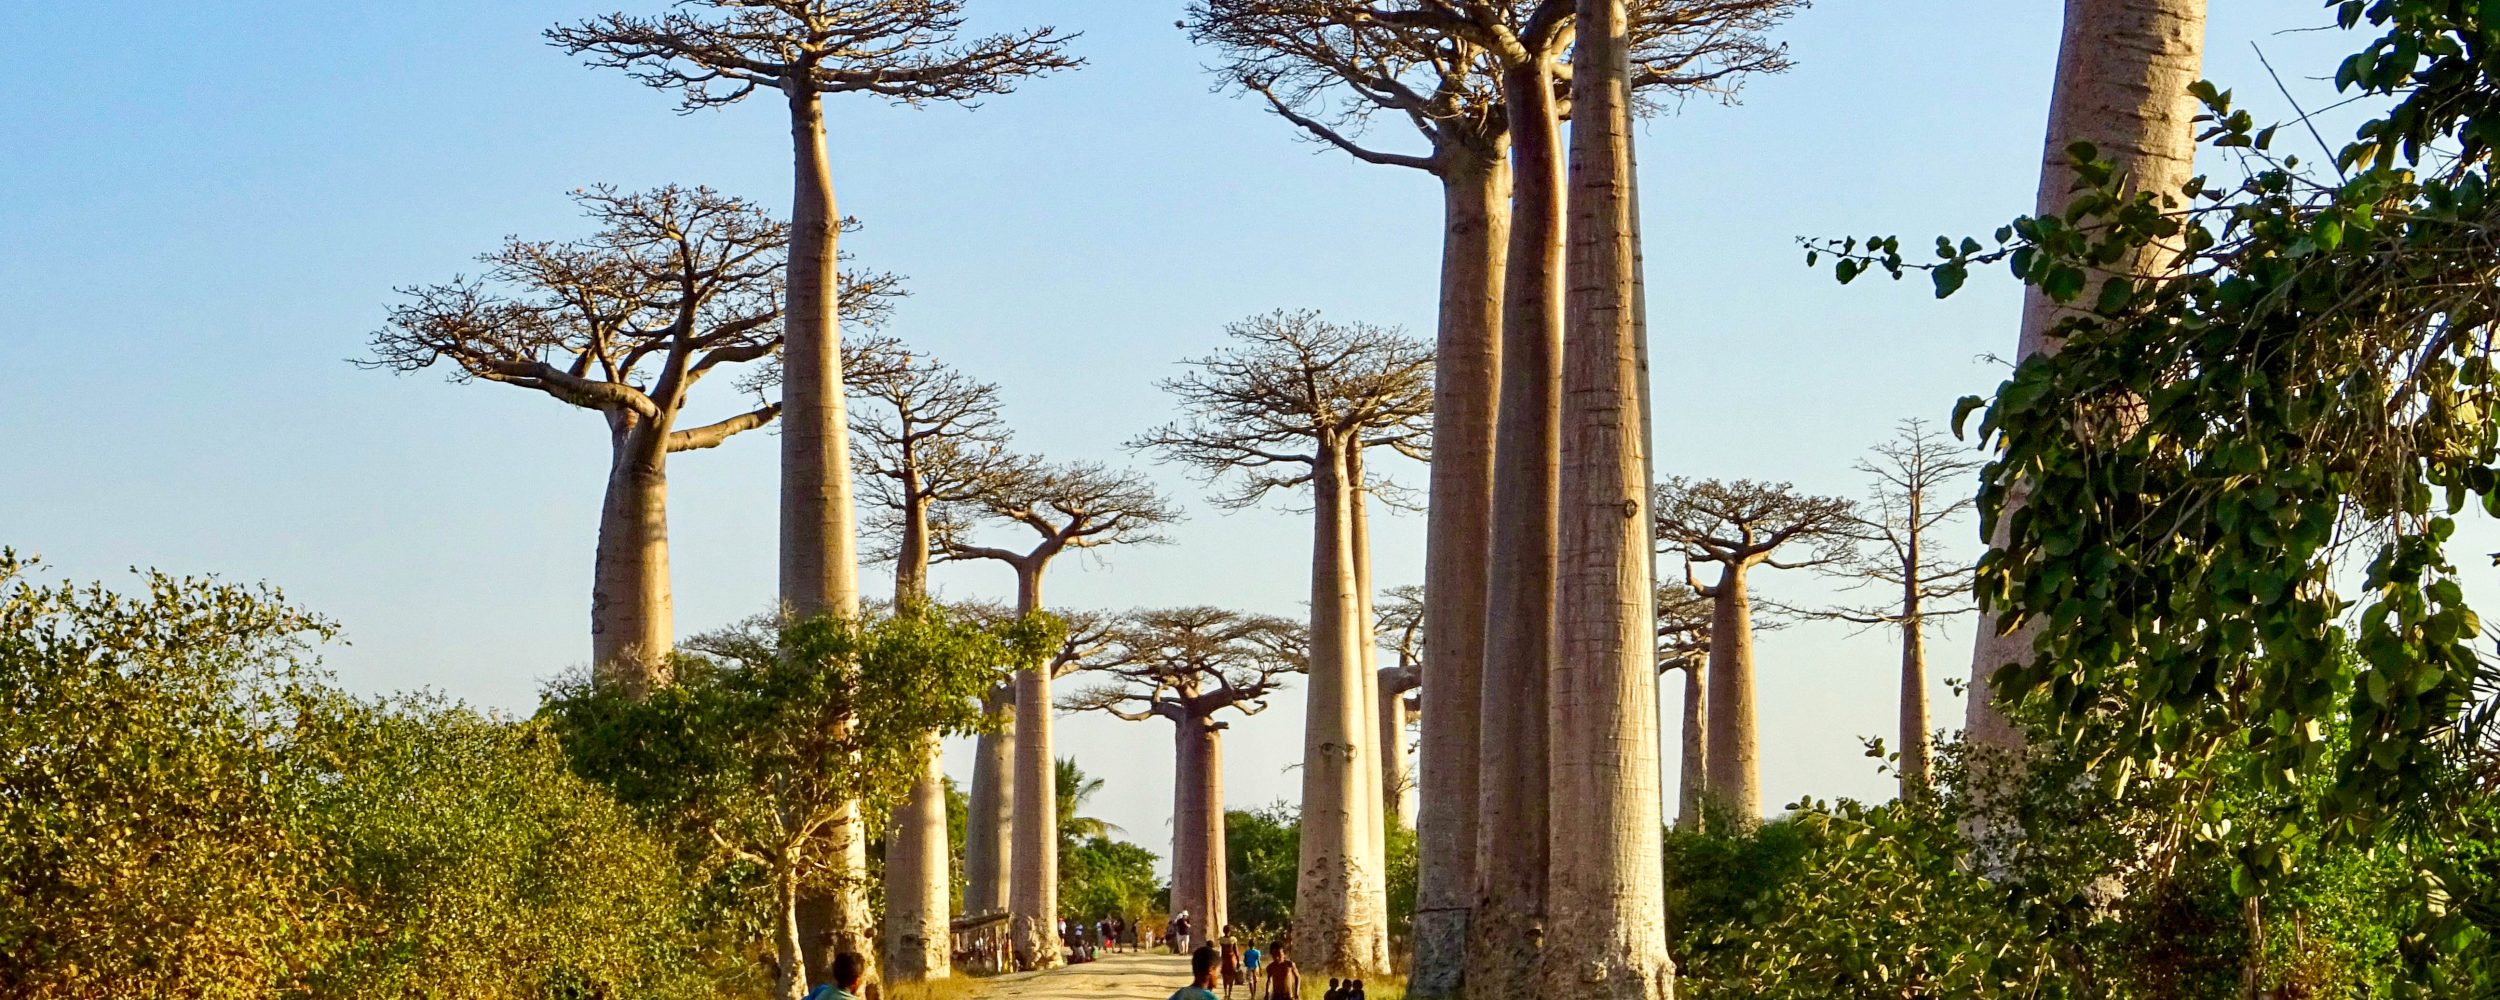 La calle Baobab cerca de Morondava